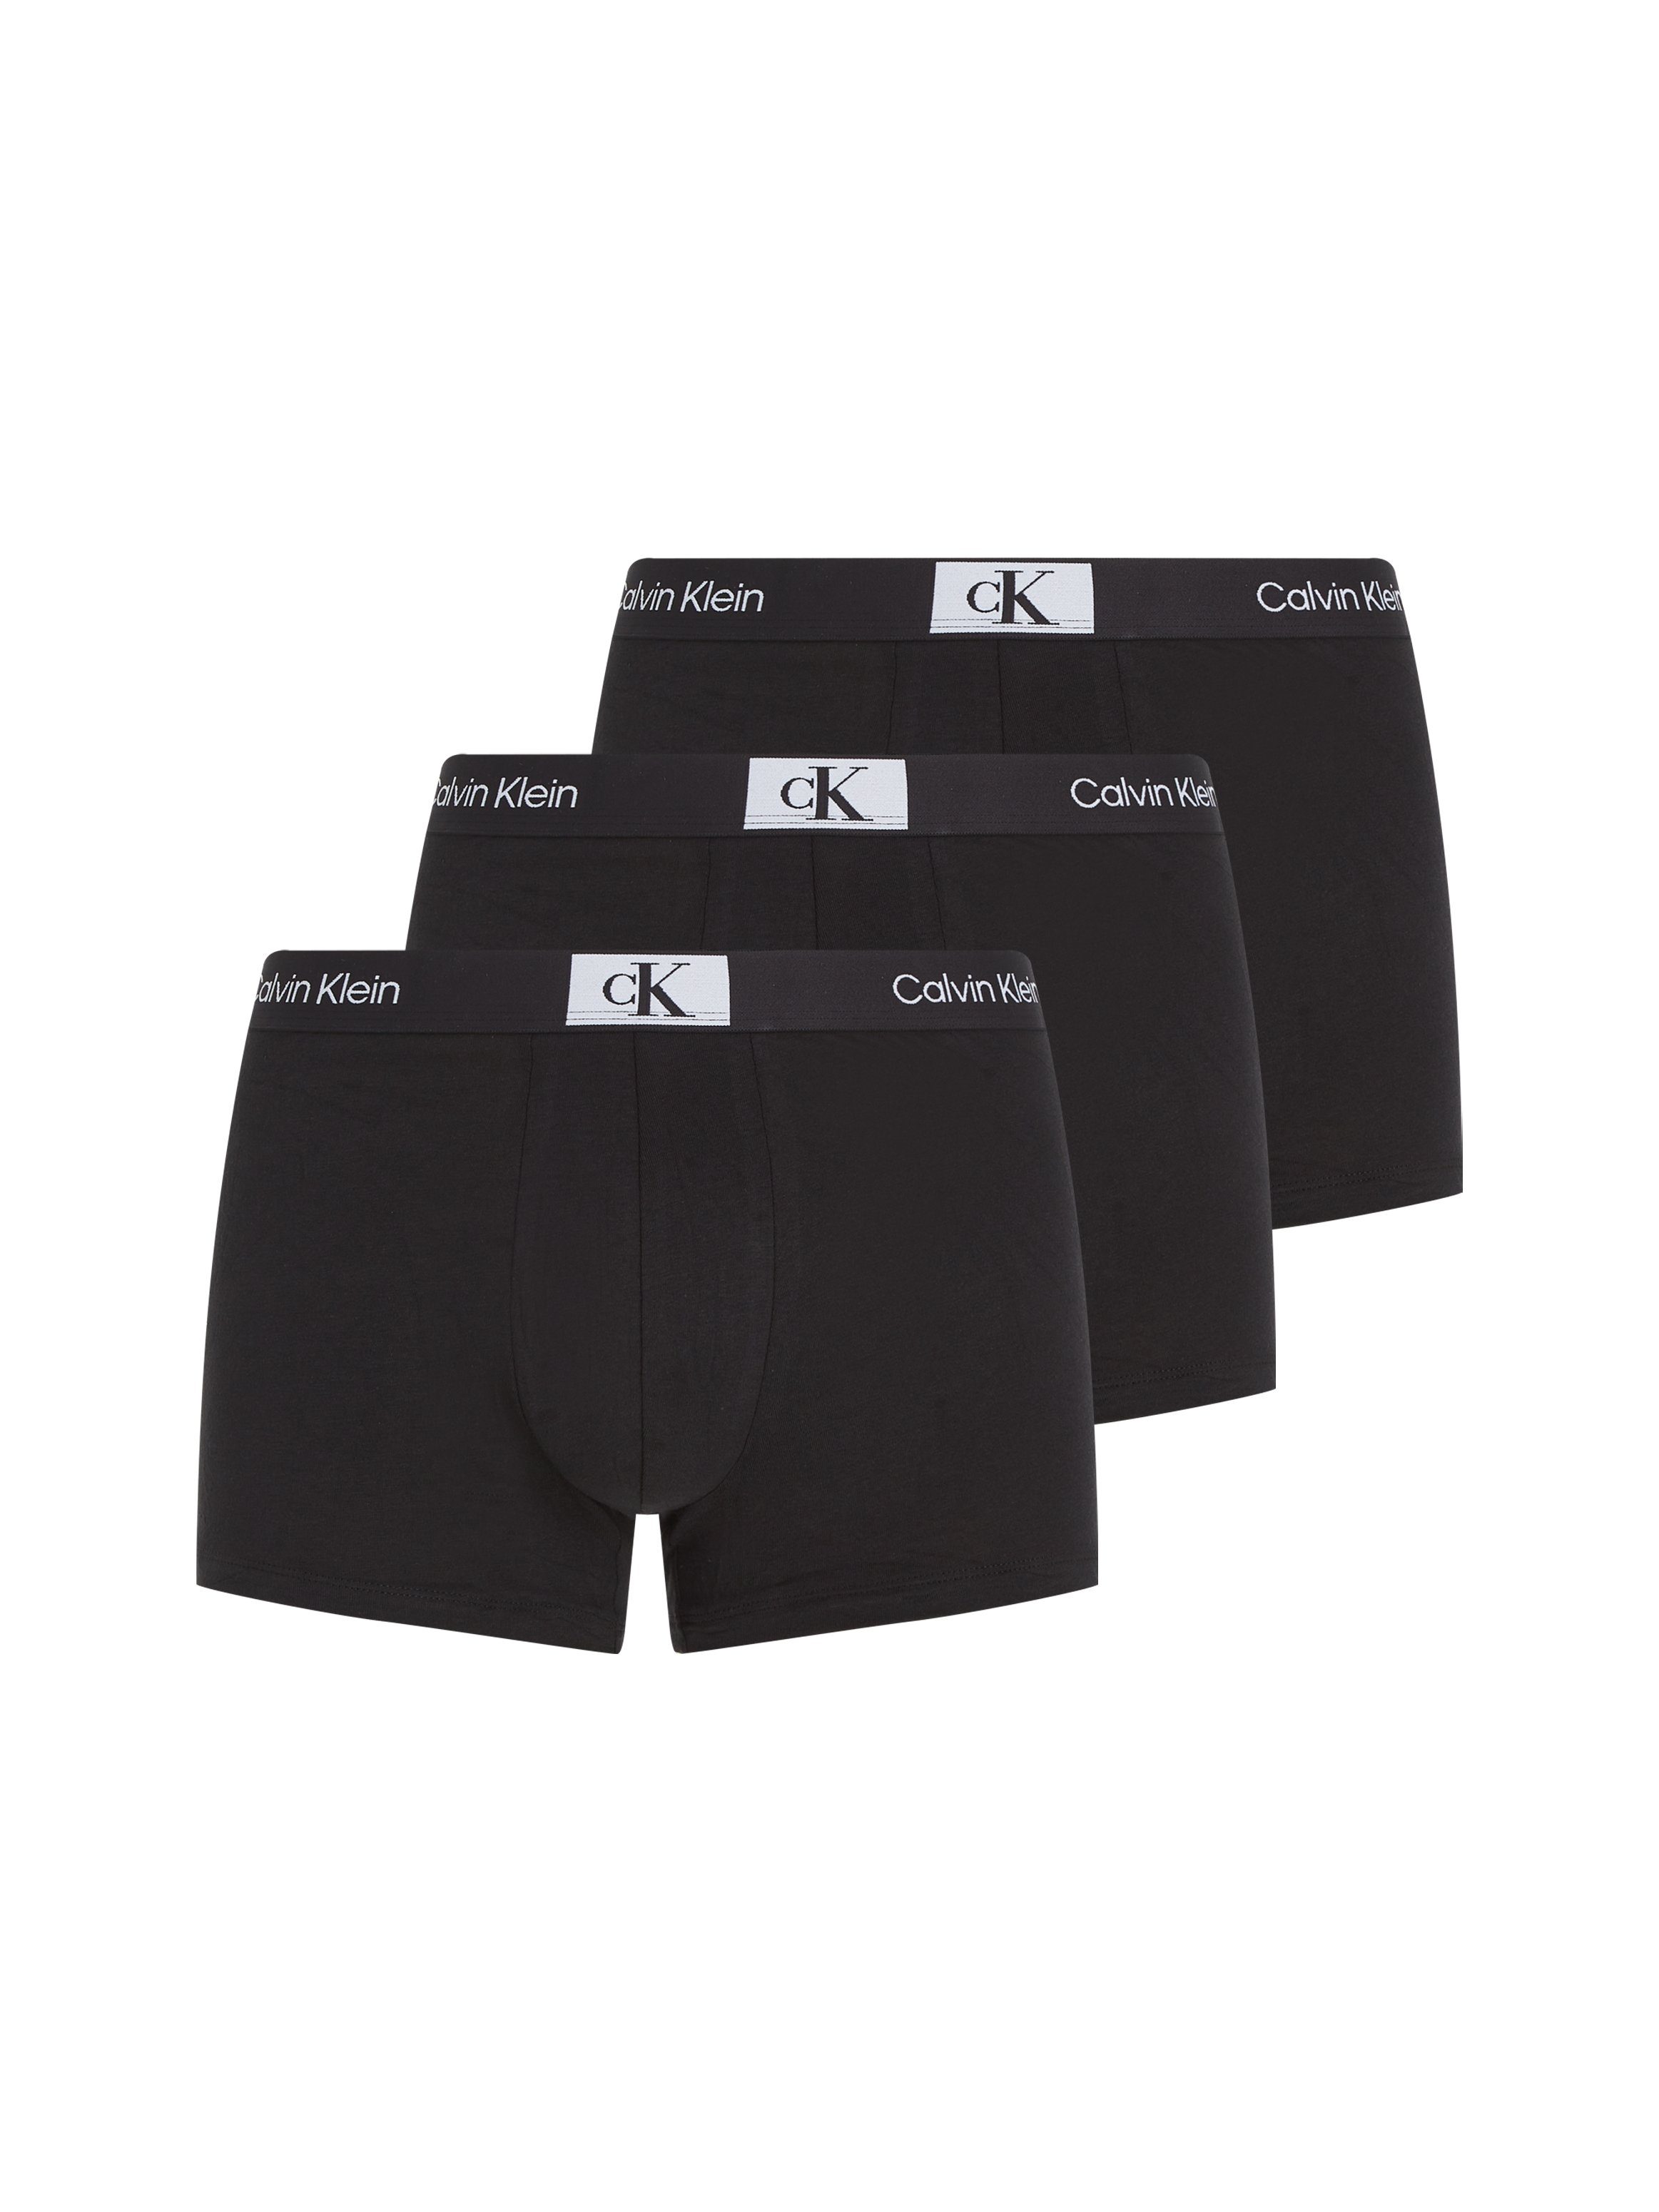 Calvin 3PK TRUNK Logo-Elastikbund Underwear BLACK&-BLACK&-BLACK (Packung, Trunk 3er-Pack) Klein Calvin Klein mit